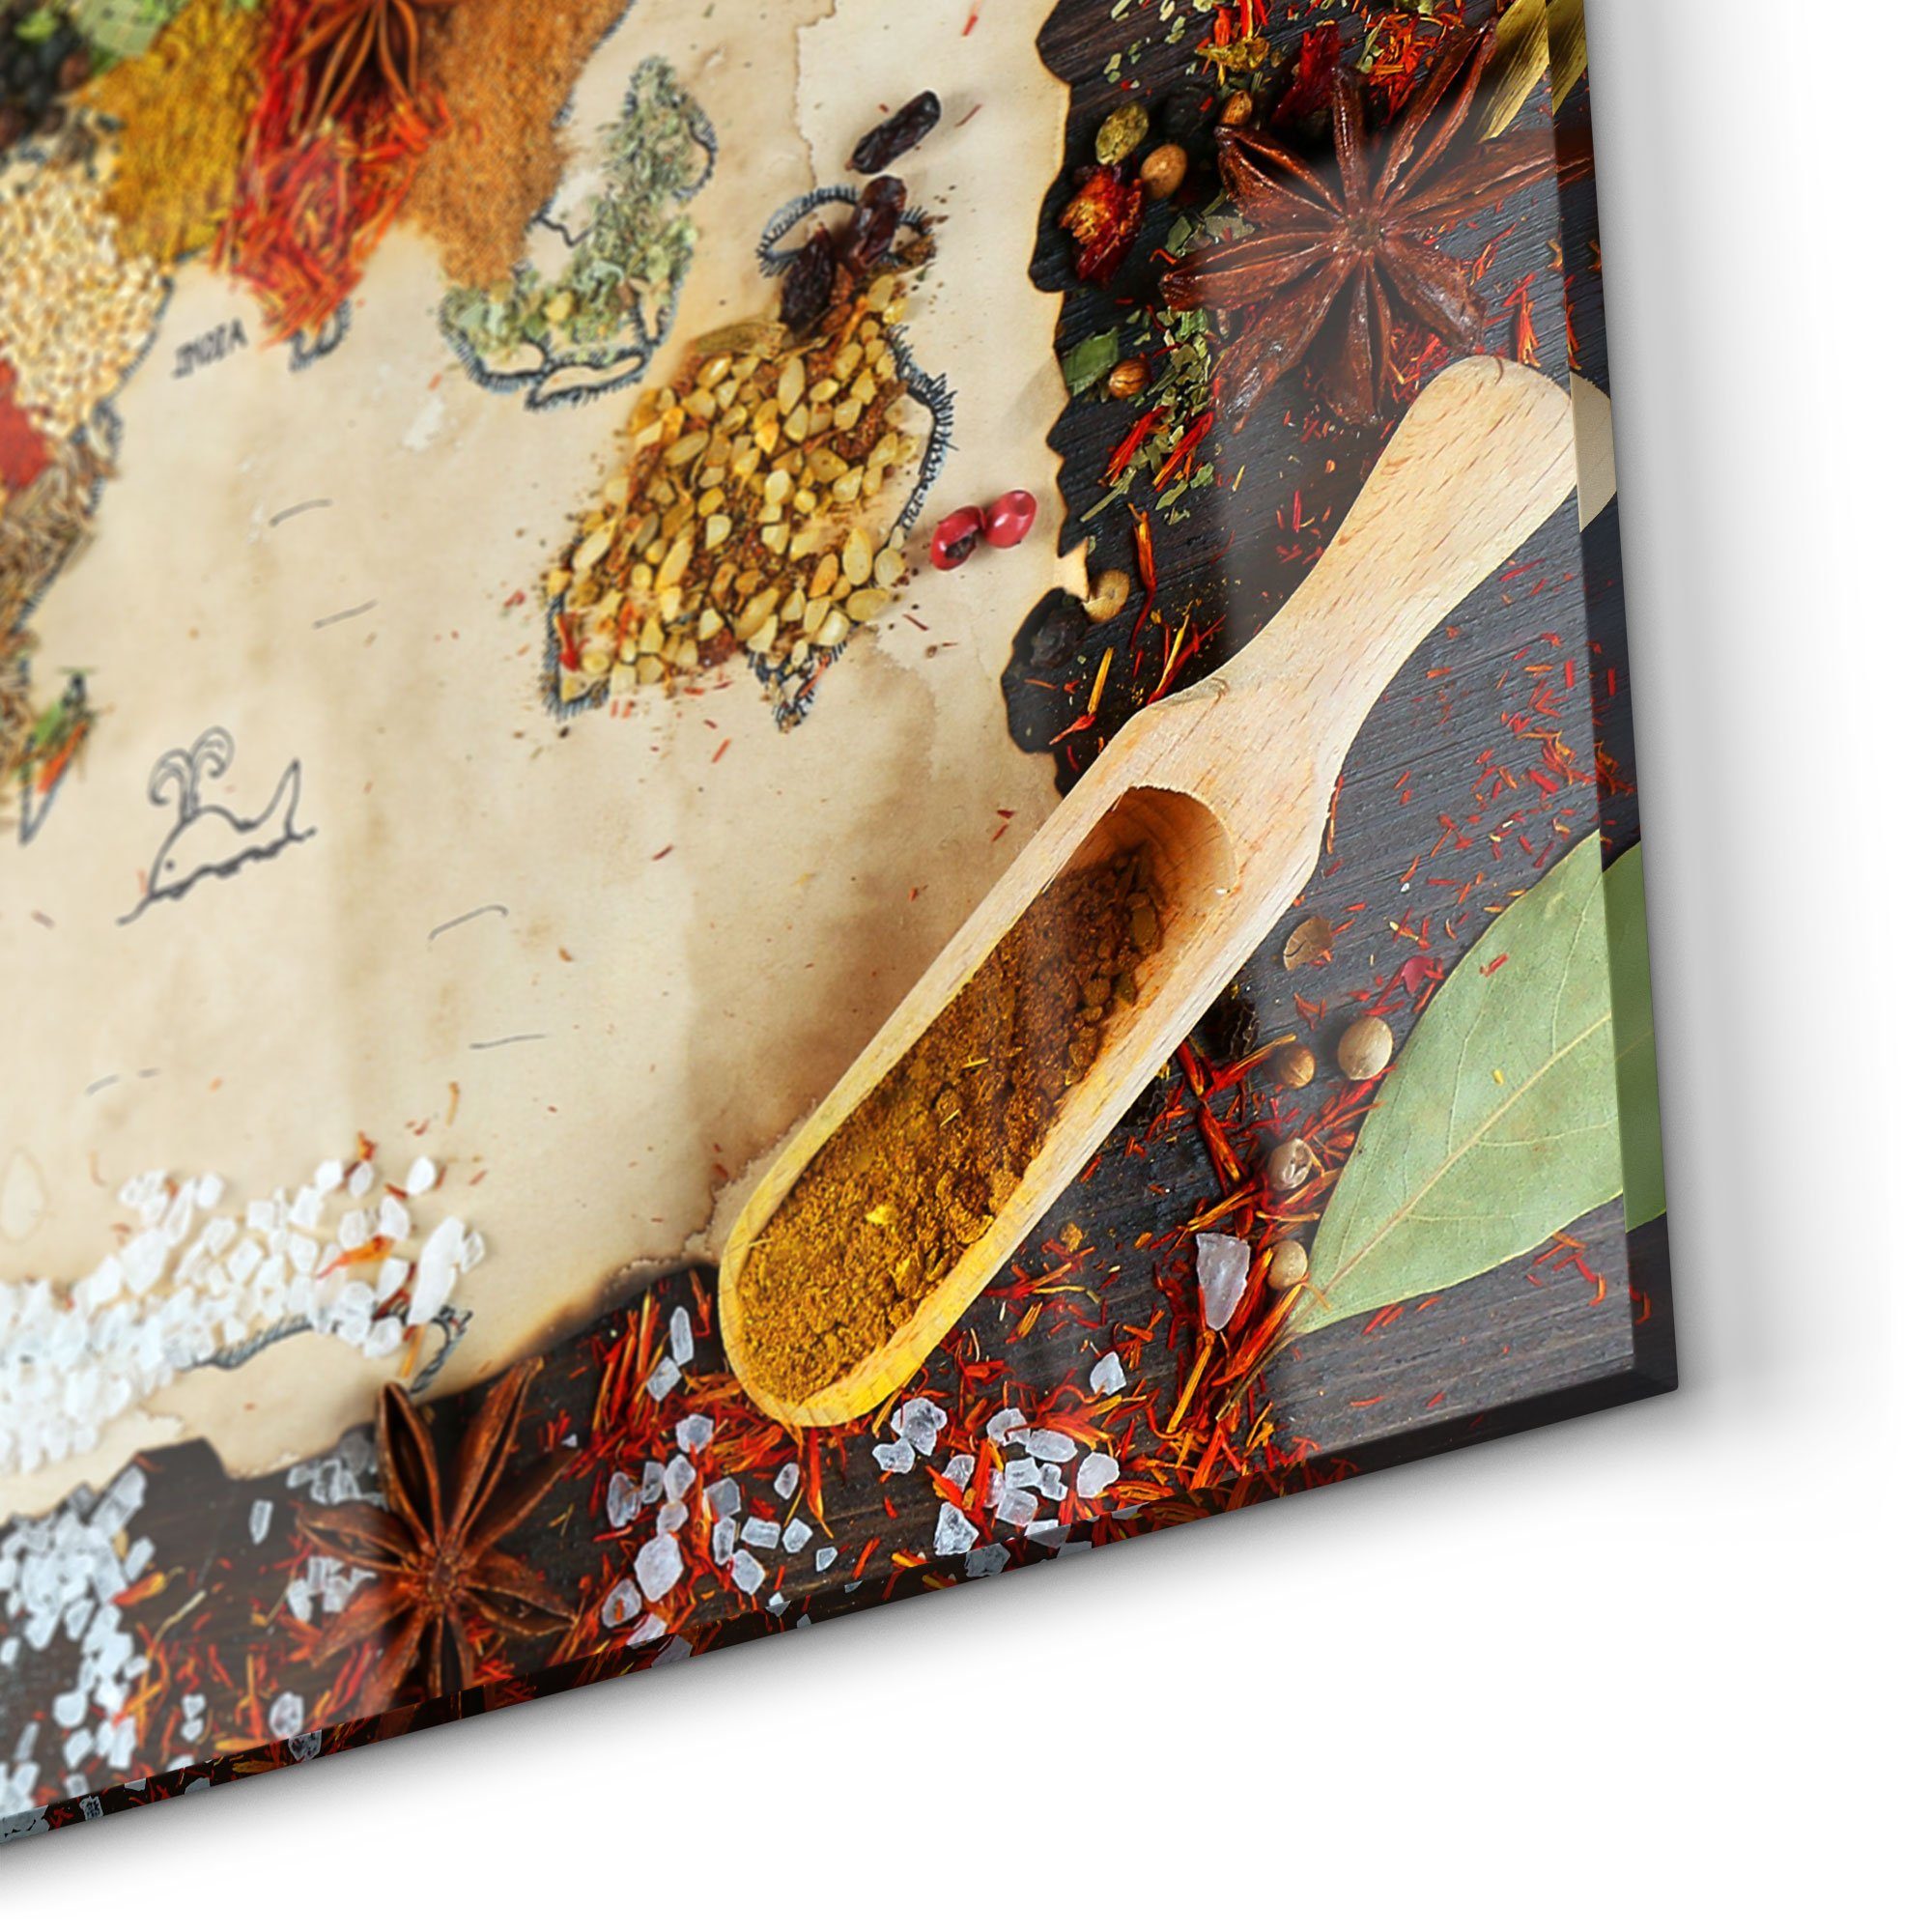 Küchenrückwand DEQORI 'Weltkarte aus Herdblende Gewürzen', Badrückwand Spritzschutz Glas